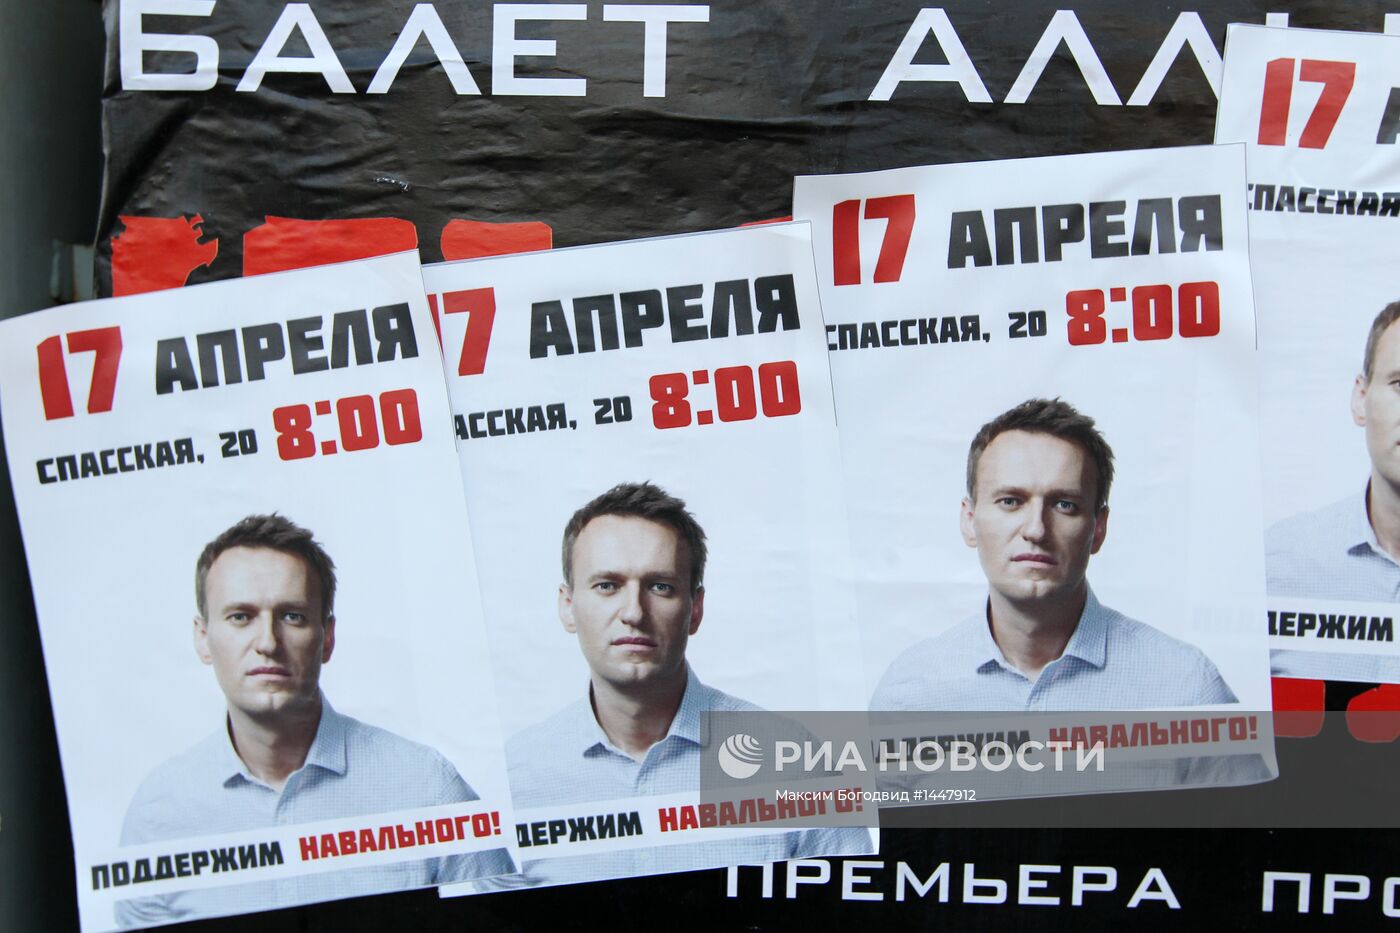 Сторонники Навального в Кирове. День до суда